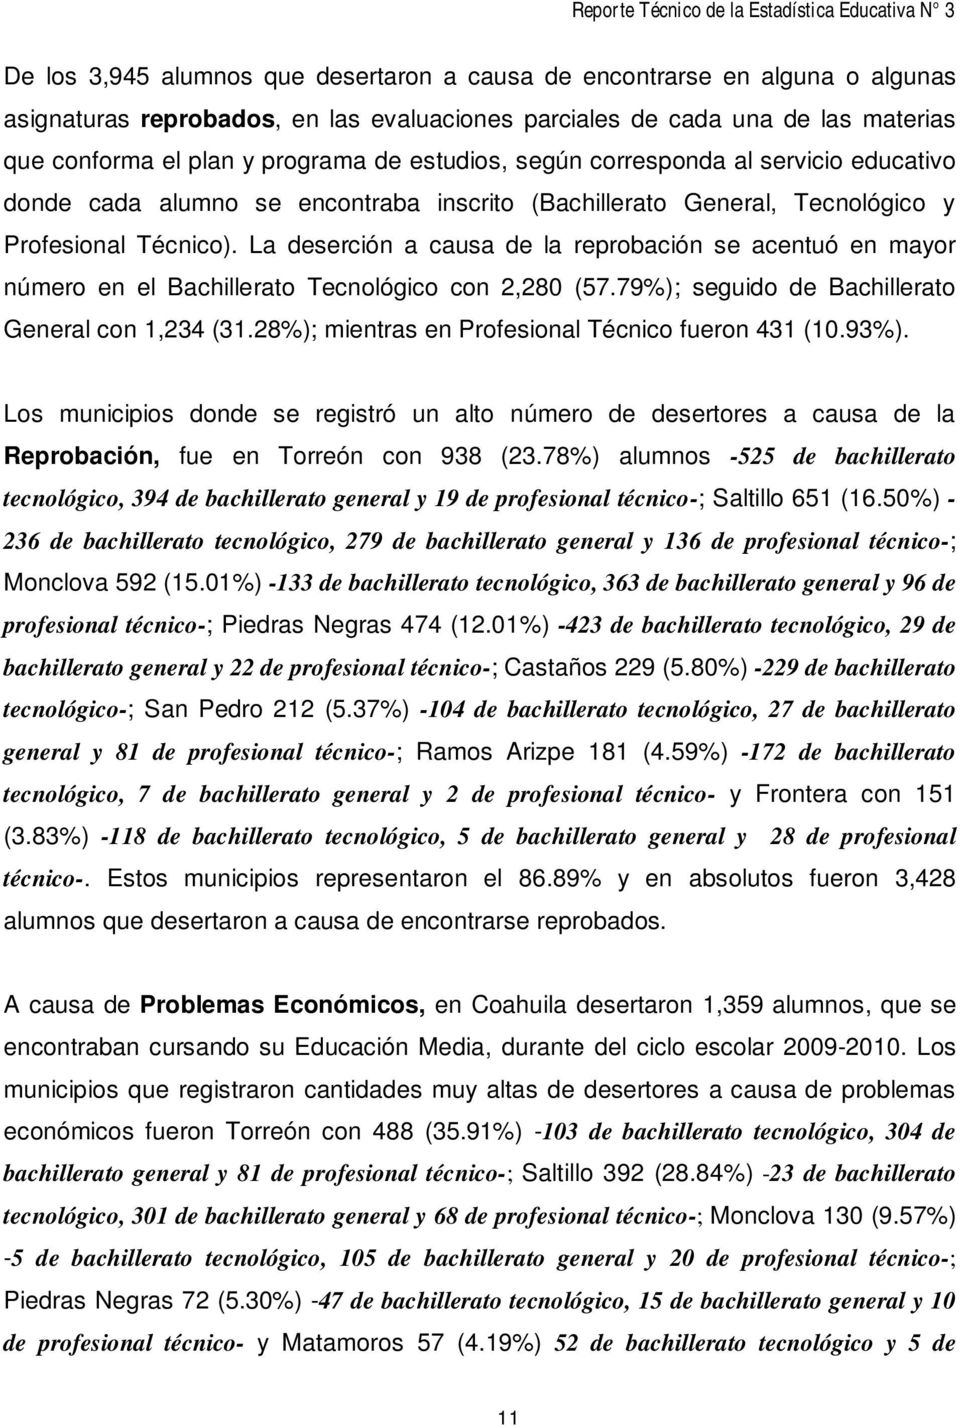 La deserción a causa de la reprobación se acentuó en mayor número en el Bachillerato Tecnológico con 2,280 (57.79%); seguido de Bachillerato General con 1,234 (31.